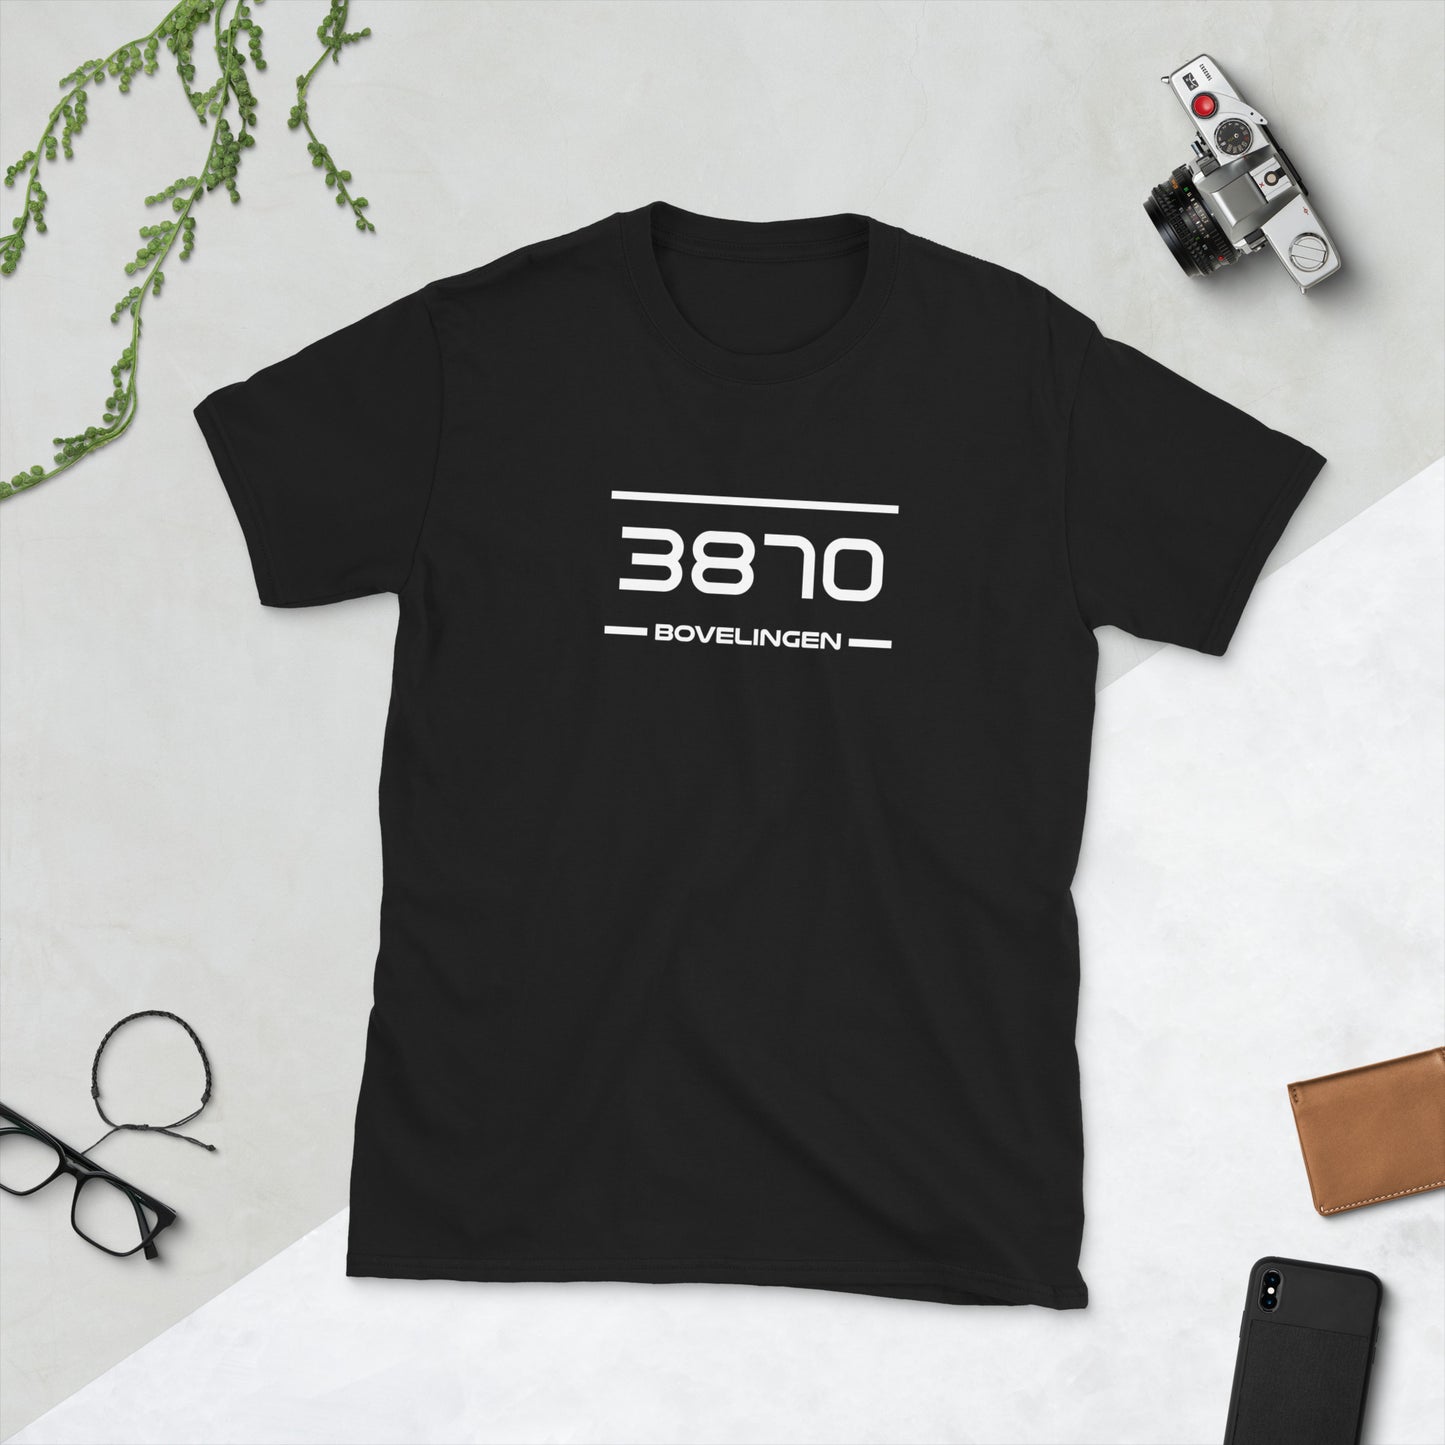 Tshirt - 3870 - Bovelingen